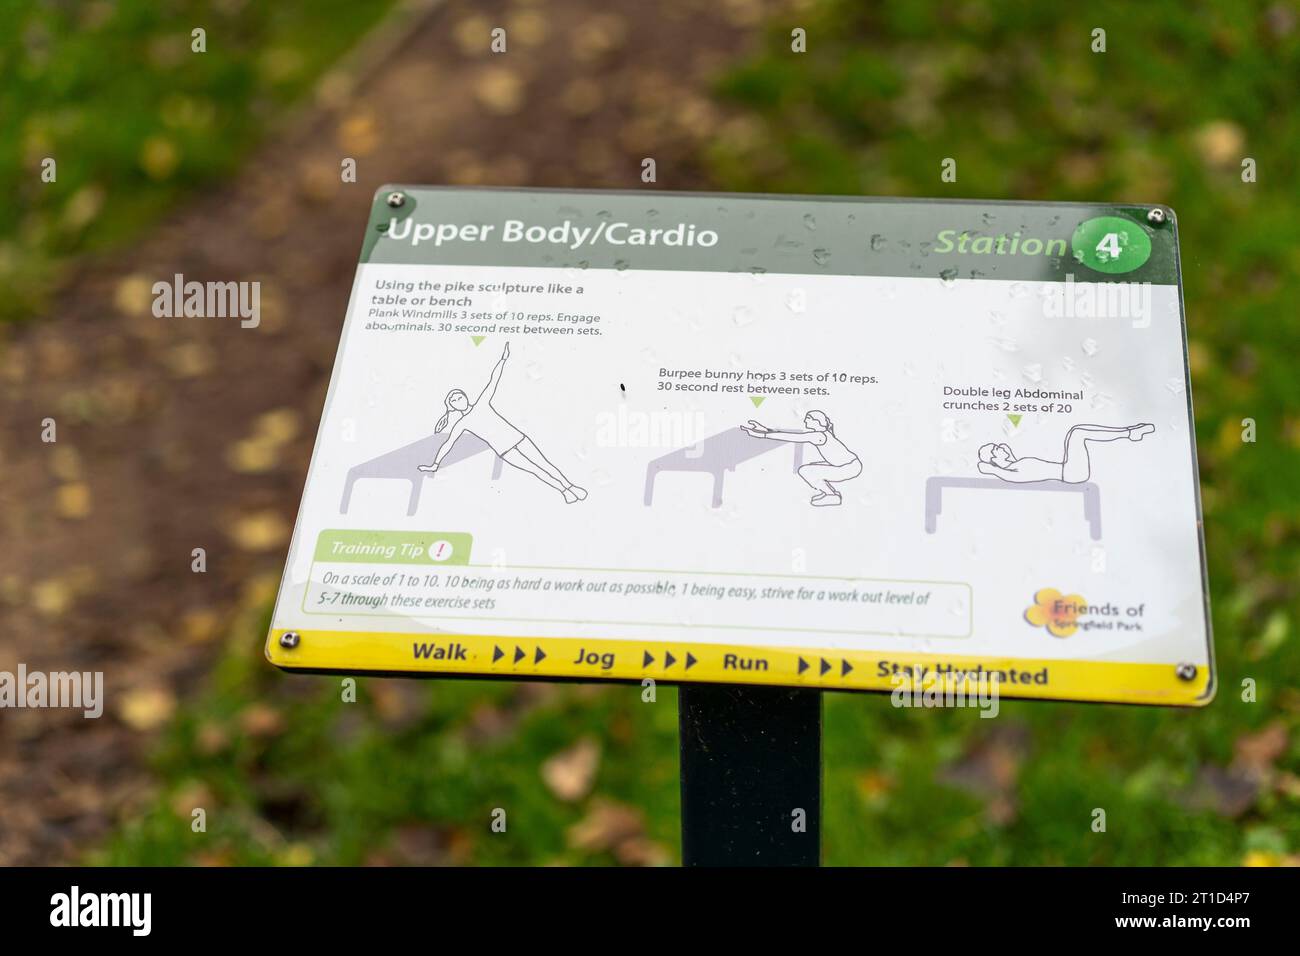 Tableau d'affichage d'exercices cardio dans un parc public, Royaume-Uni montrant divers exercices pour garder la forme et rester en bonne santé. Banque D'Images